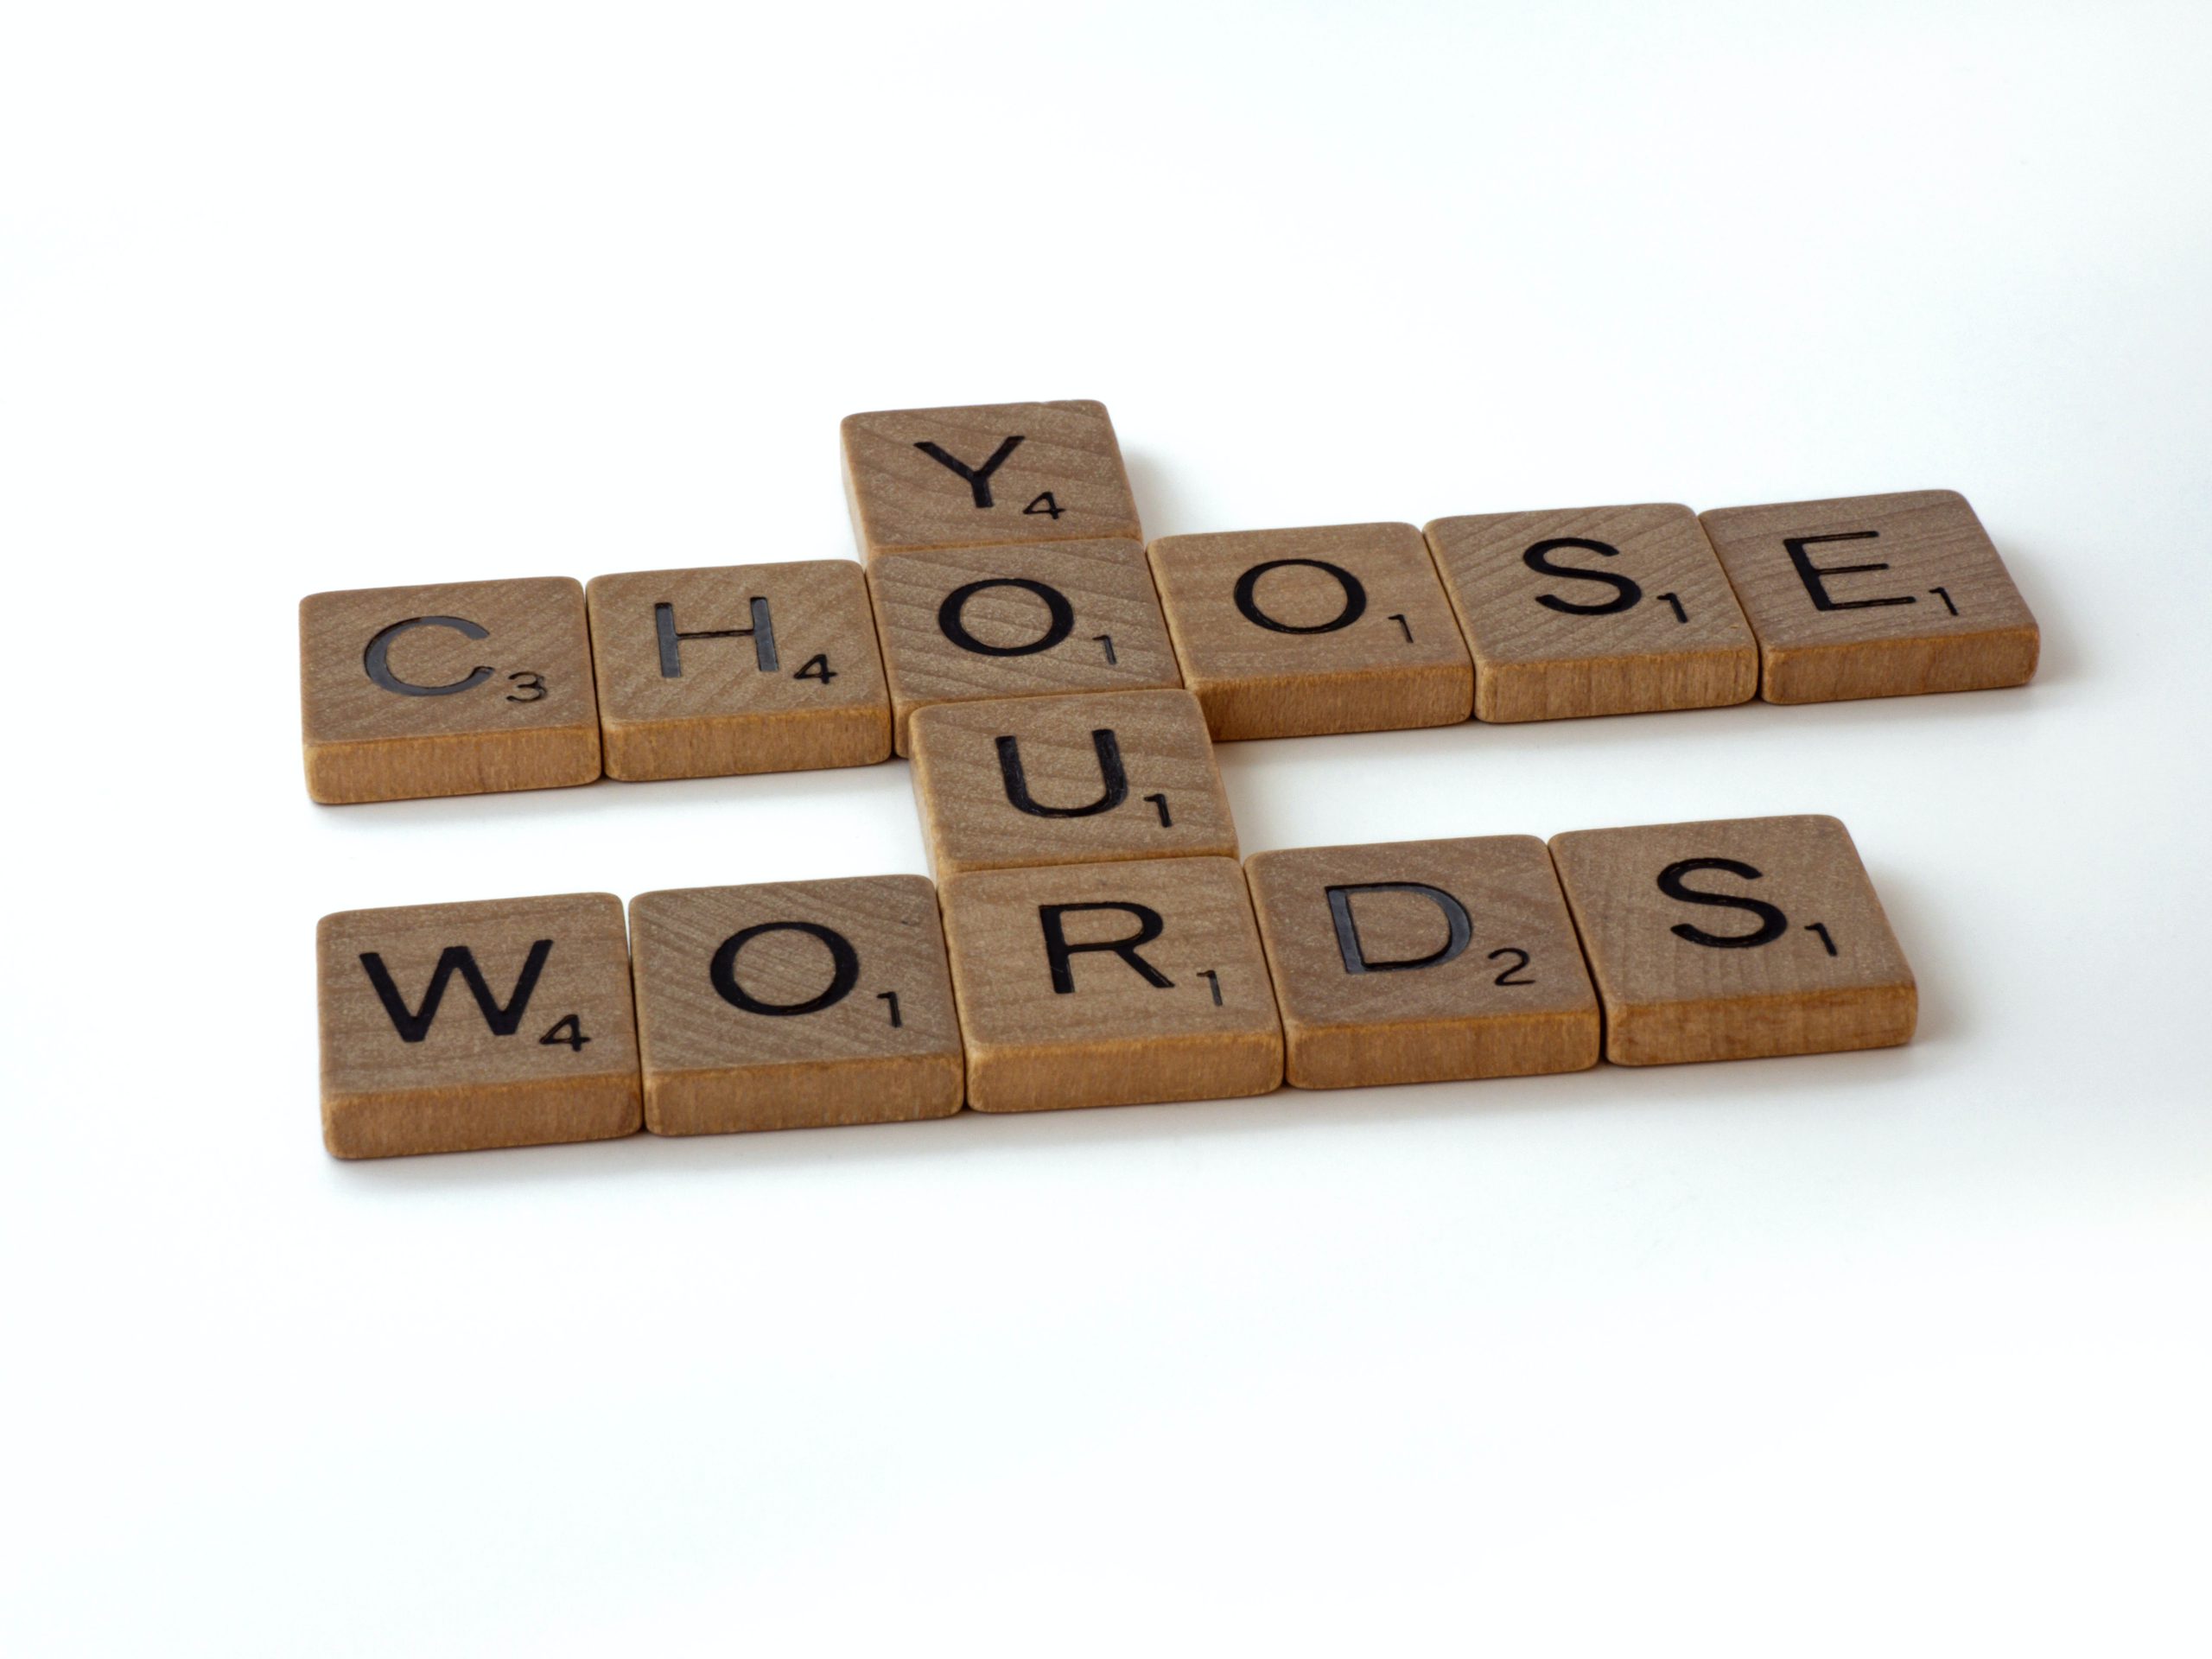 "choose your words" written in scrabble letters